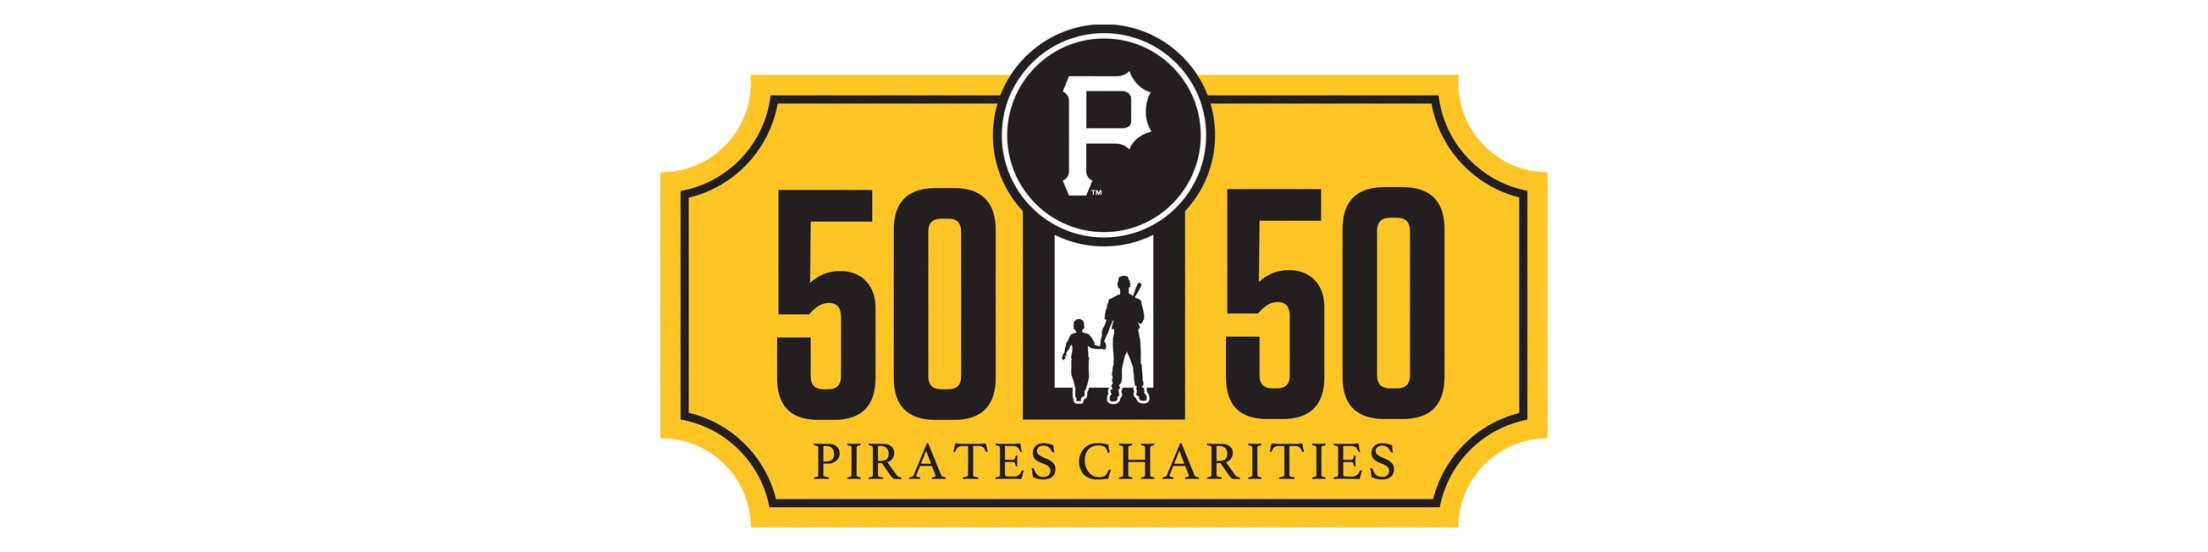 50/50 Raffle  Charities  Pittsburgh Pirates